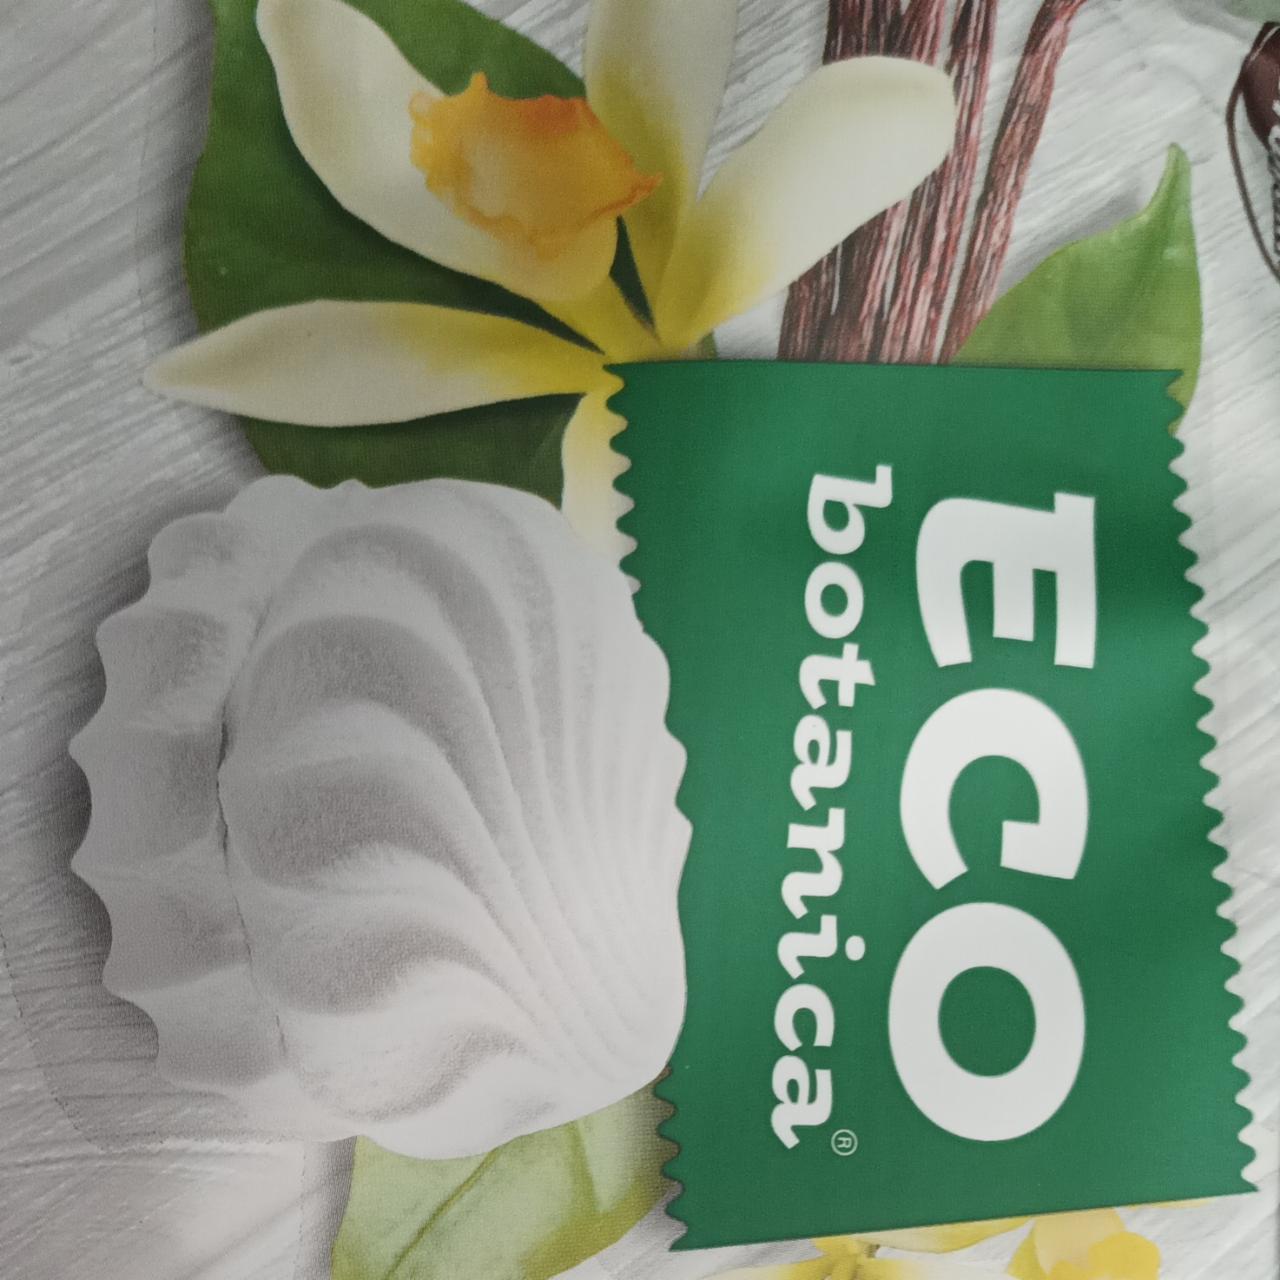 Фото - Зефир с ванильным вкусом и витаминами ECO botanika